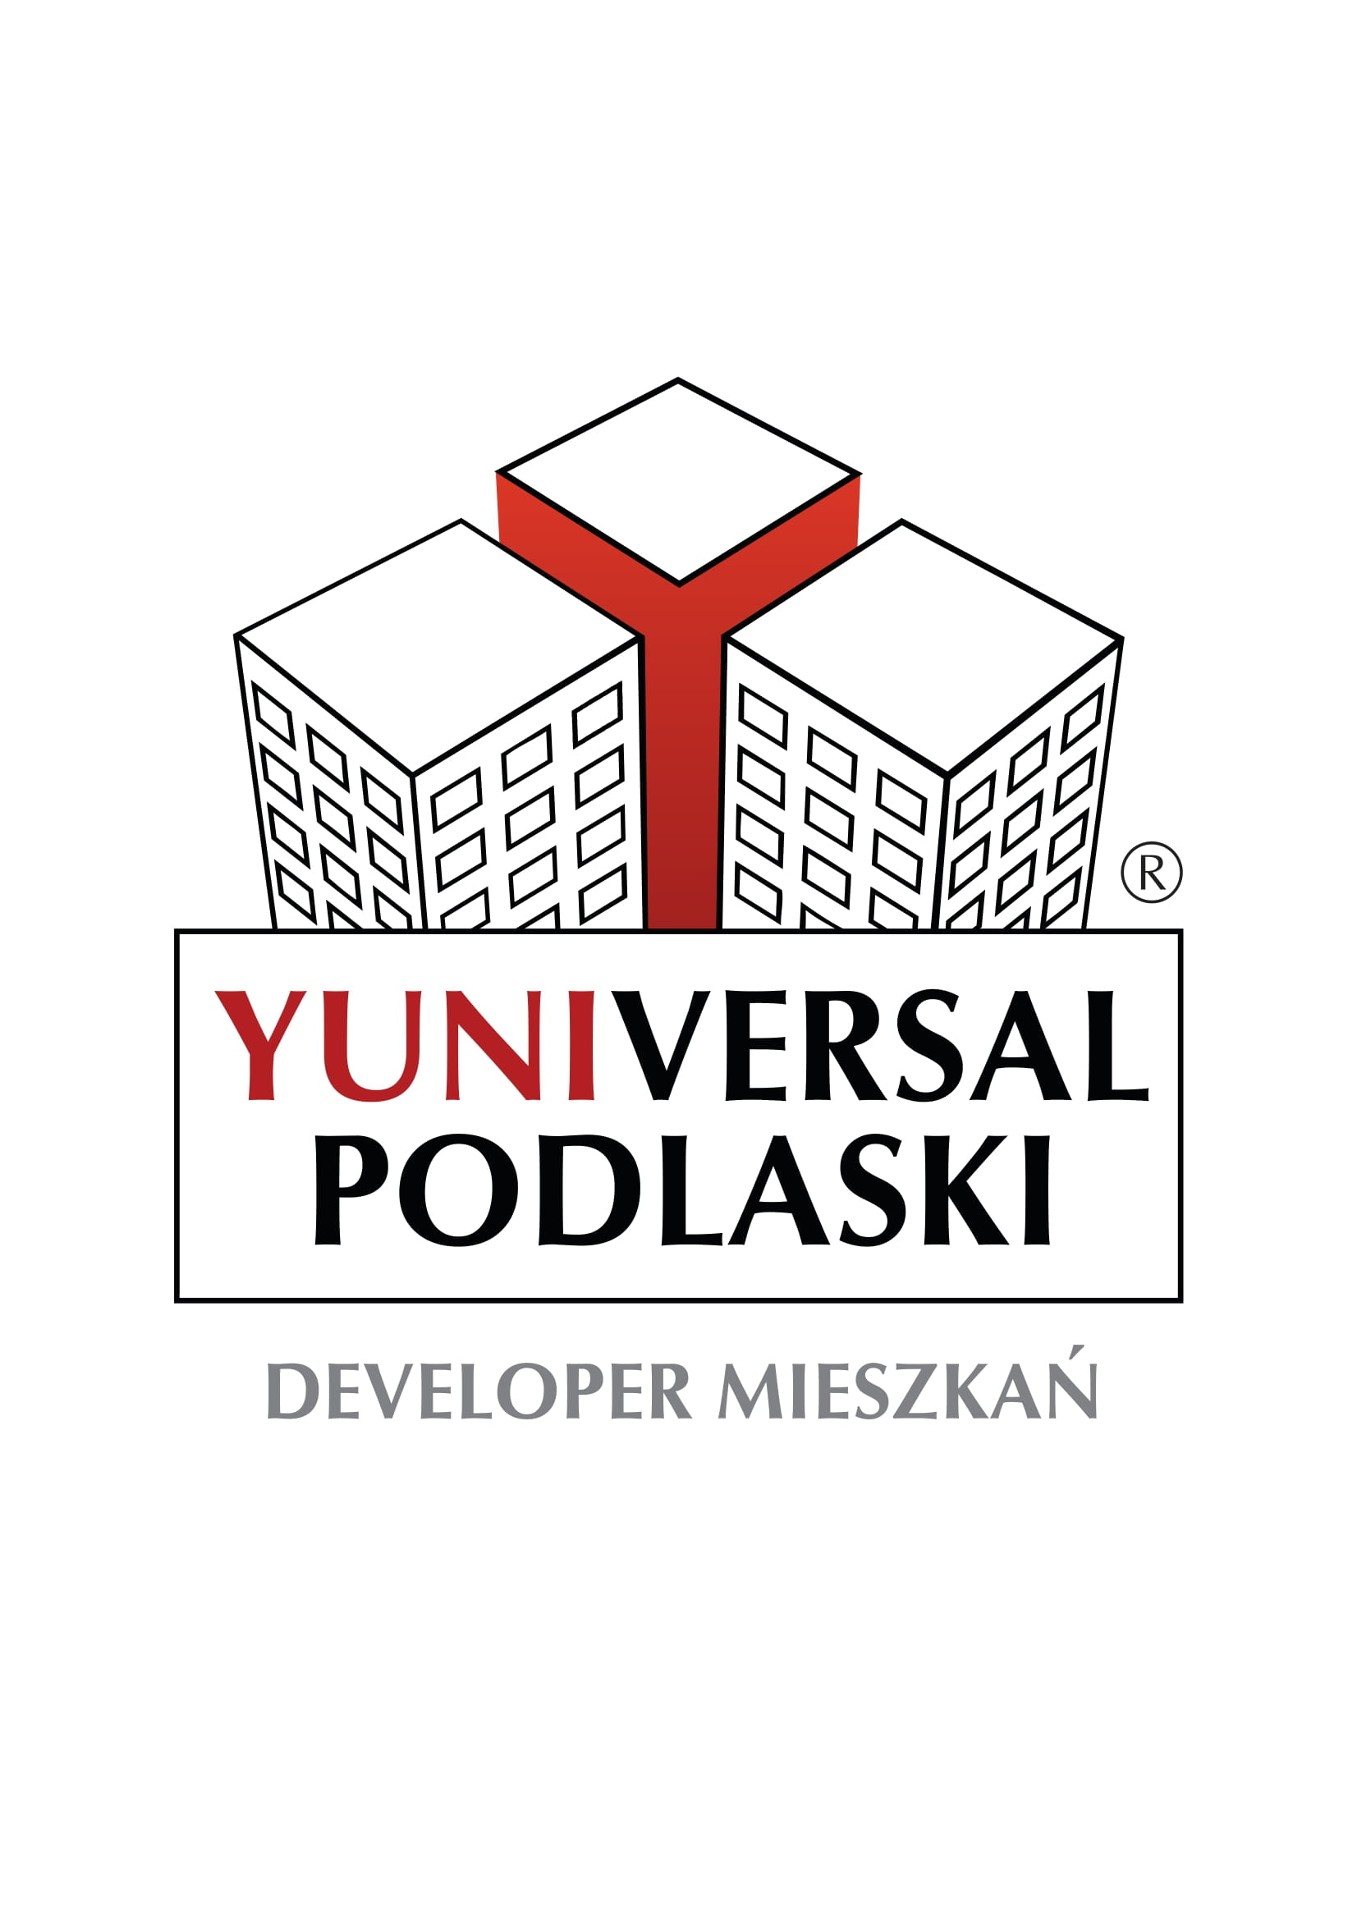 Logo Yuniversal Podlaski